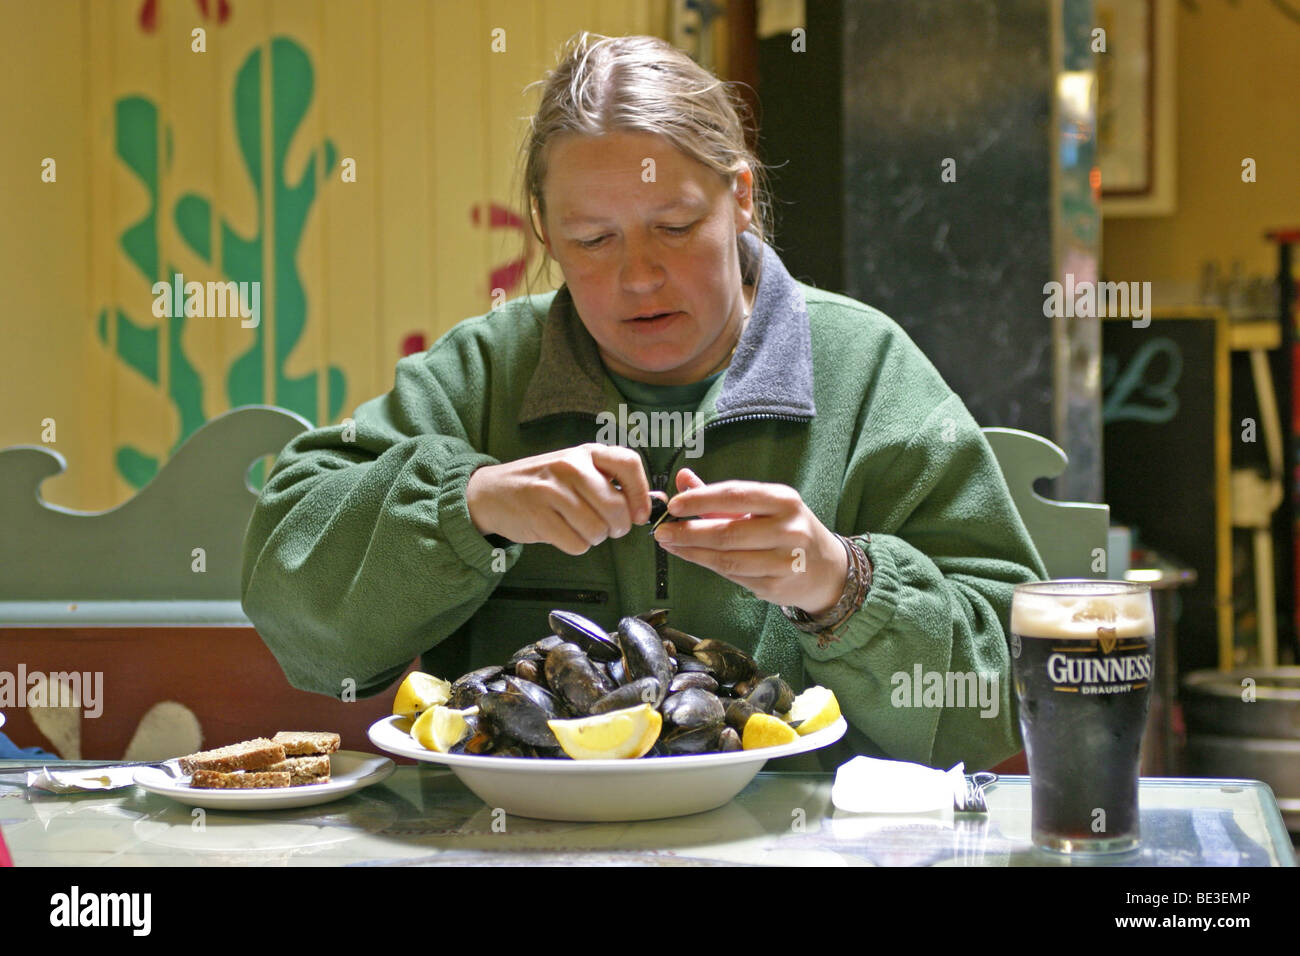 Ritratto di una giovane donna di mangiare conchiglie di mare, nella contea di Kerry, Repubblica di Irlanda Foto Stock